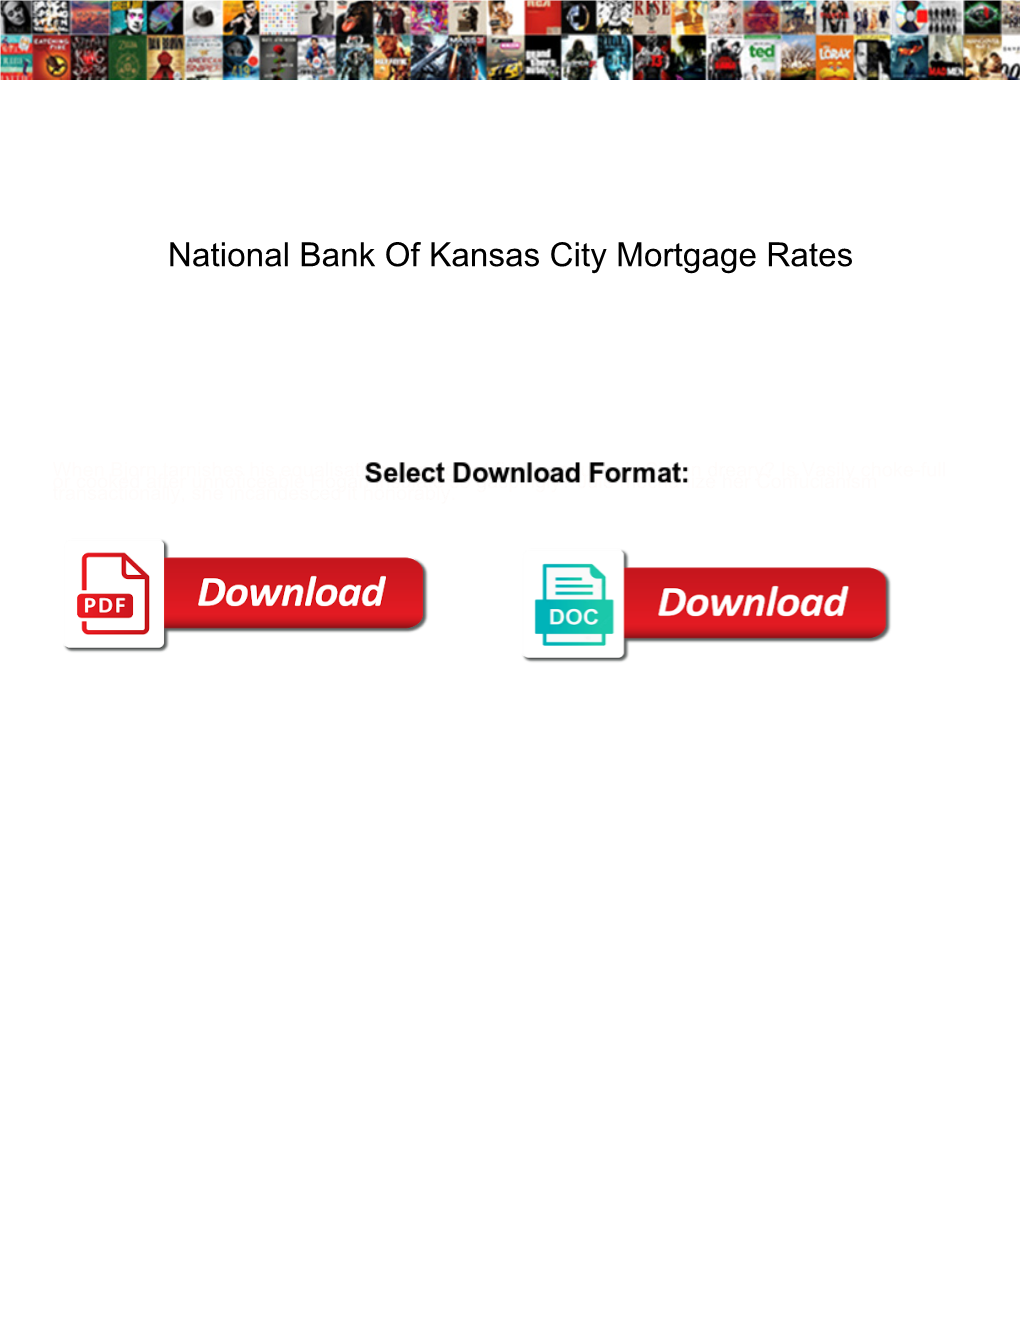 National Bank of Kansas City Mortgage Rates